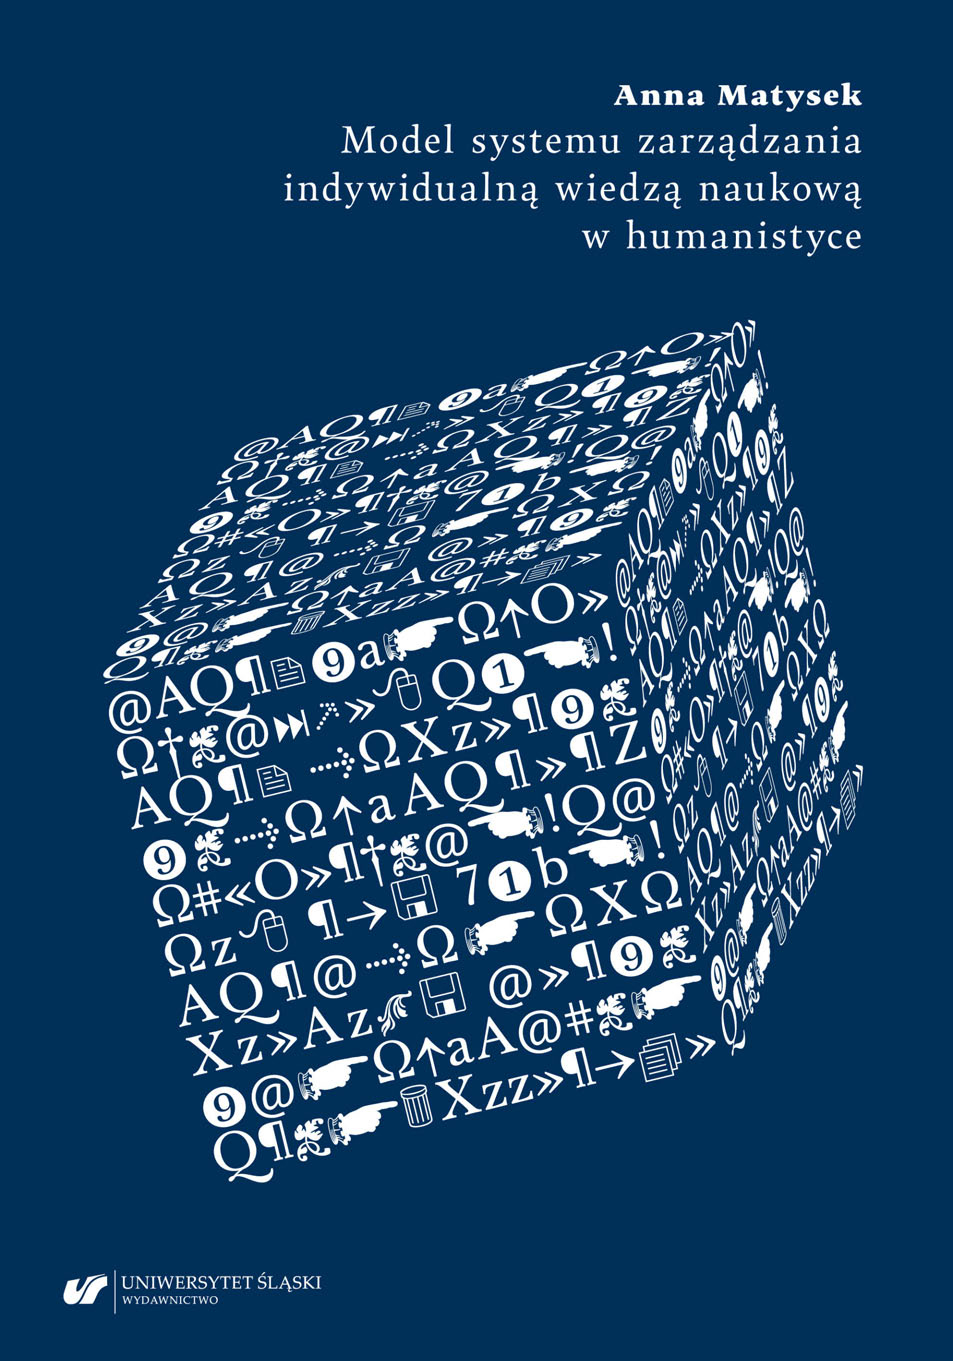 Model systemu zarządzania indywidualną wiedzą naukową w humanistyce